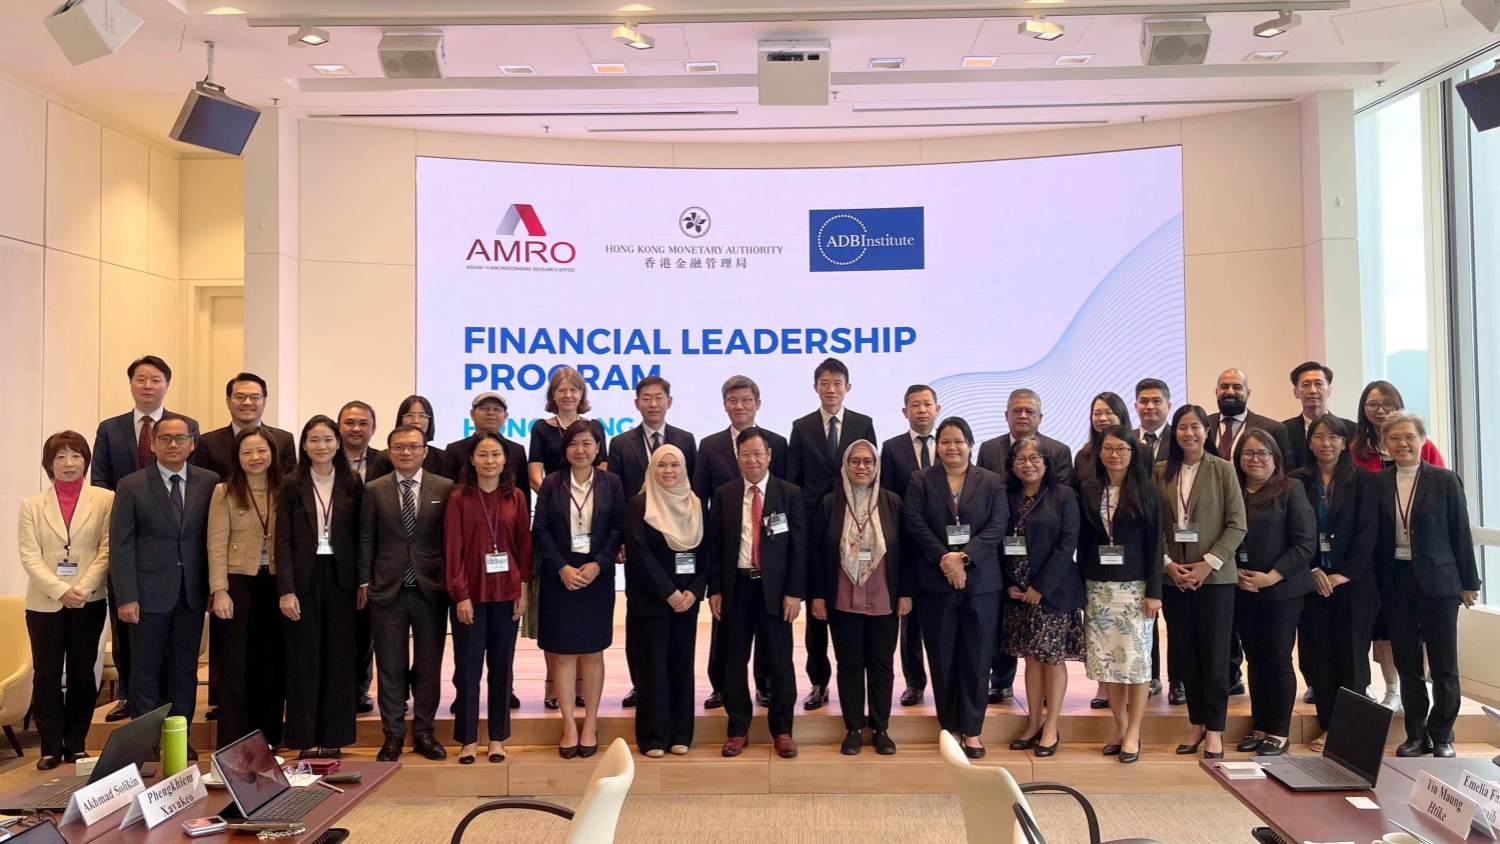 東南亞國家財政部及央行高級代表聚港 參與金融領導力培訓課程